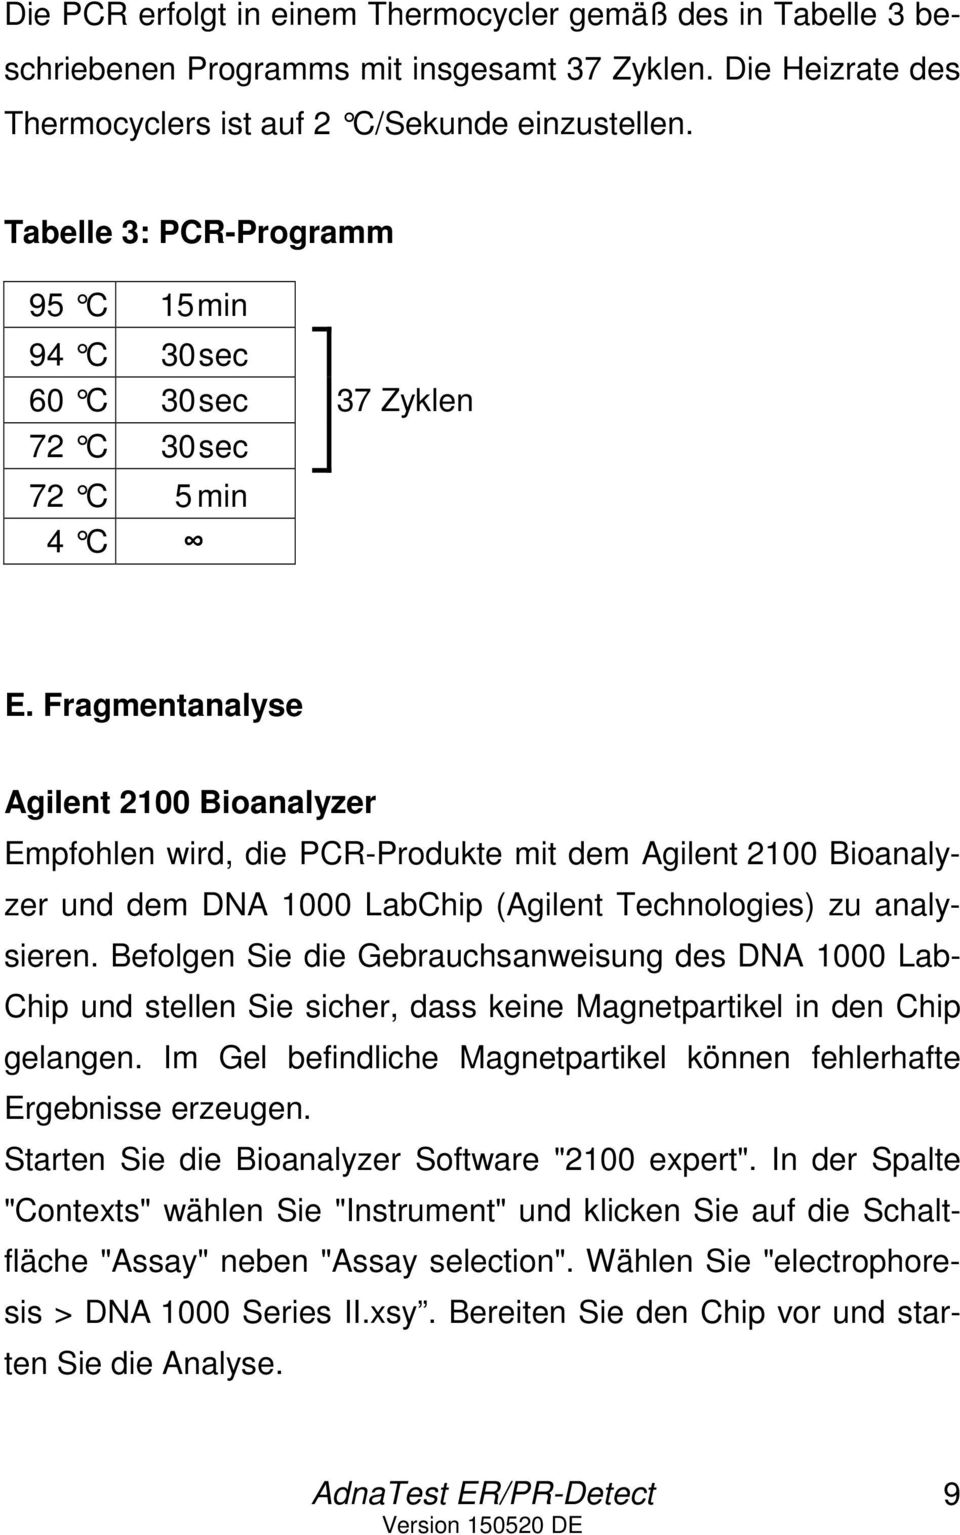 Fragmentanalyse Agilent 2100 Bioanalyzer Empfohlen wird, die PCR-Produkte mit dem Agilent 2100 Bioanalyzer und dem DNA 1000 LabChip (Agilent Technologies) zu analysieren.